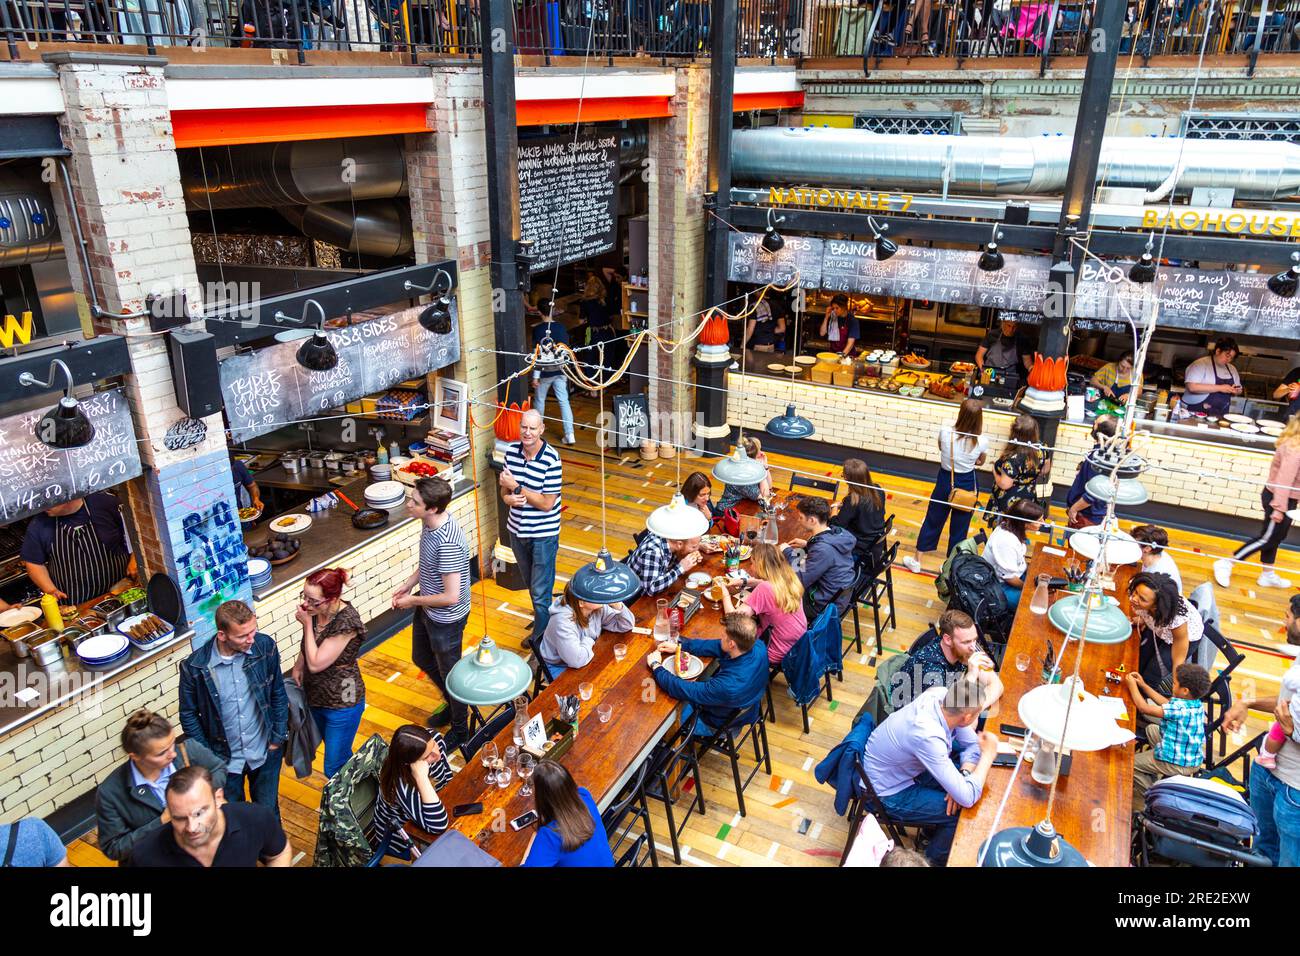 Die Menschen essen in einem Food Court, Interieur des Mackie Bürgermeister in einem ehemaligen Fleischmarkt Gebäude in Manchester, Großbritannien Stockfoto